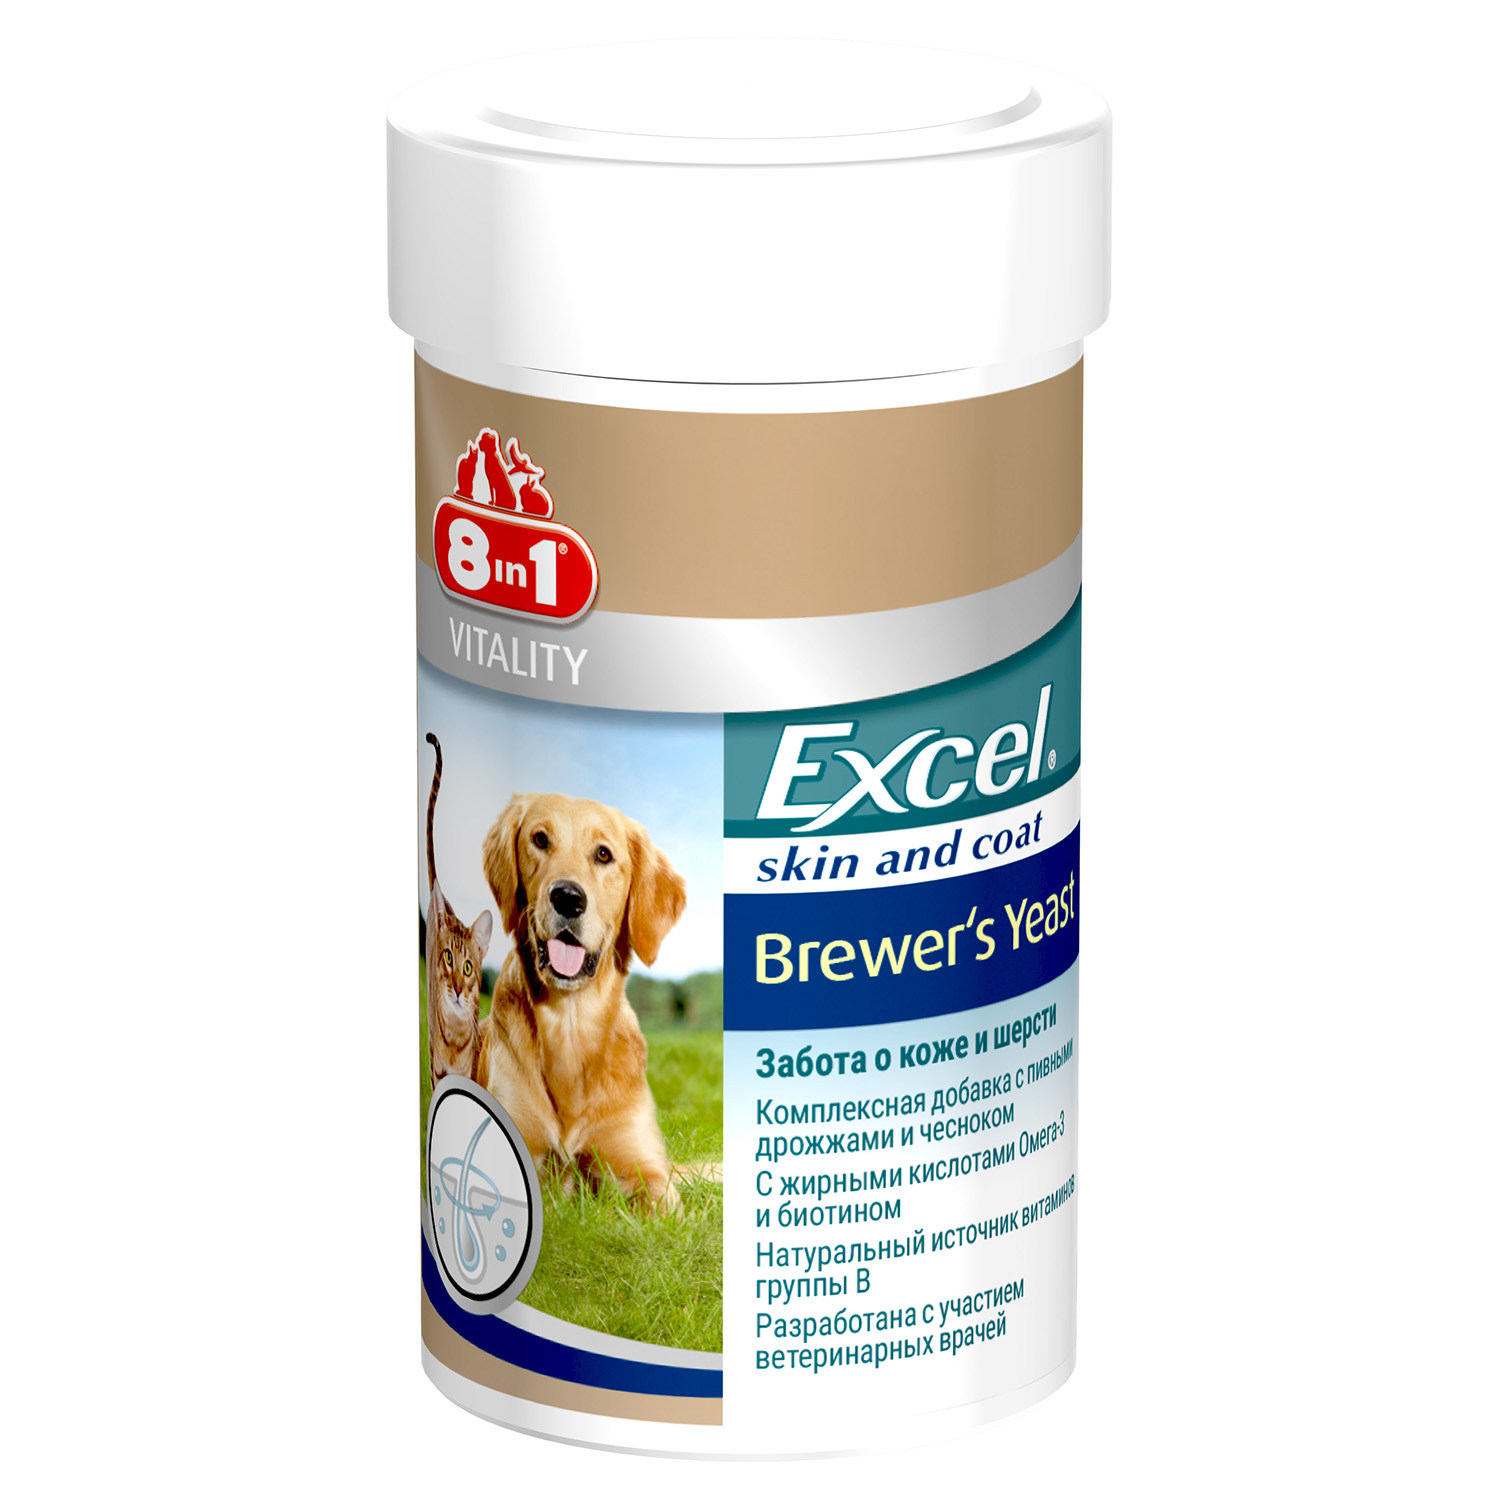 8 in 1 Excel Brewers Yeast корм добавка пивн. дрожжи д/круп. соб 80 шт